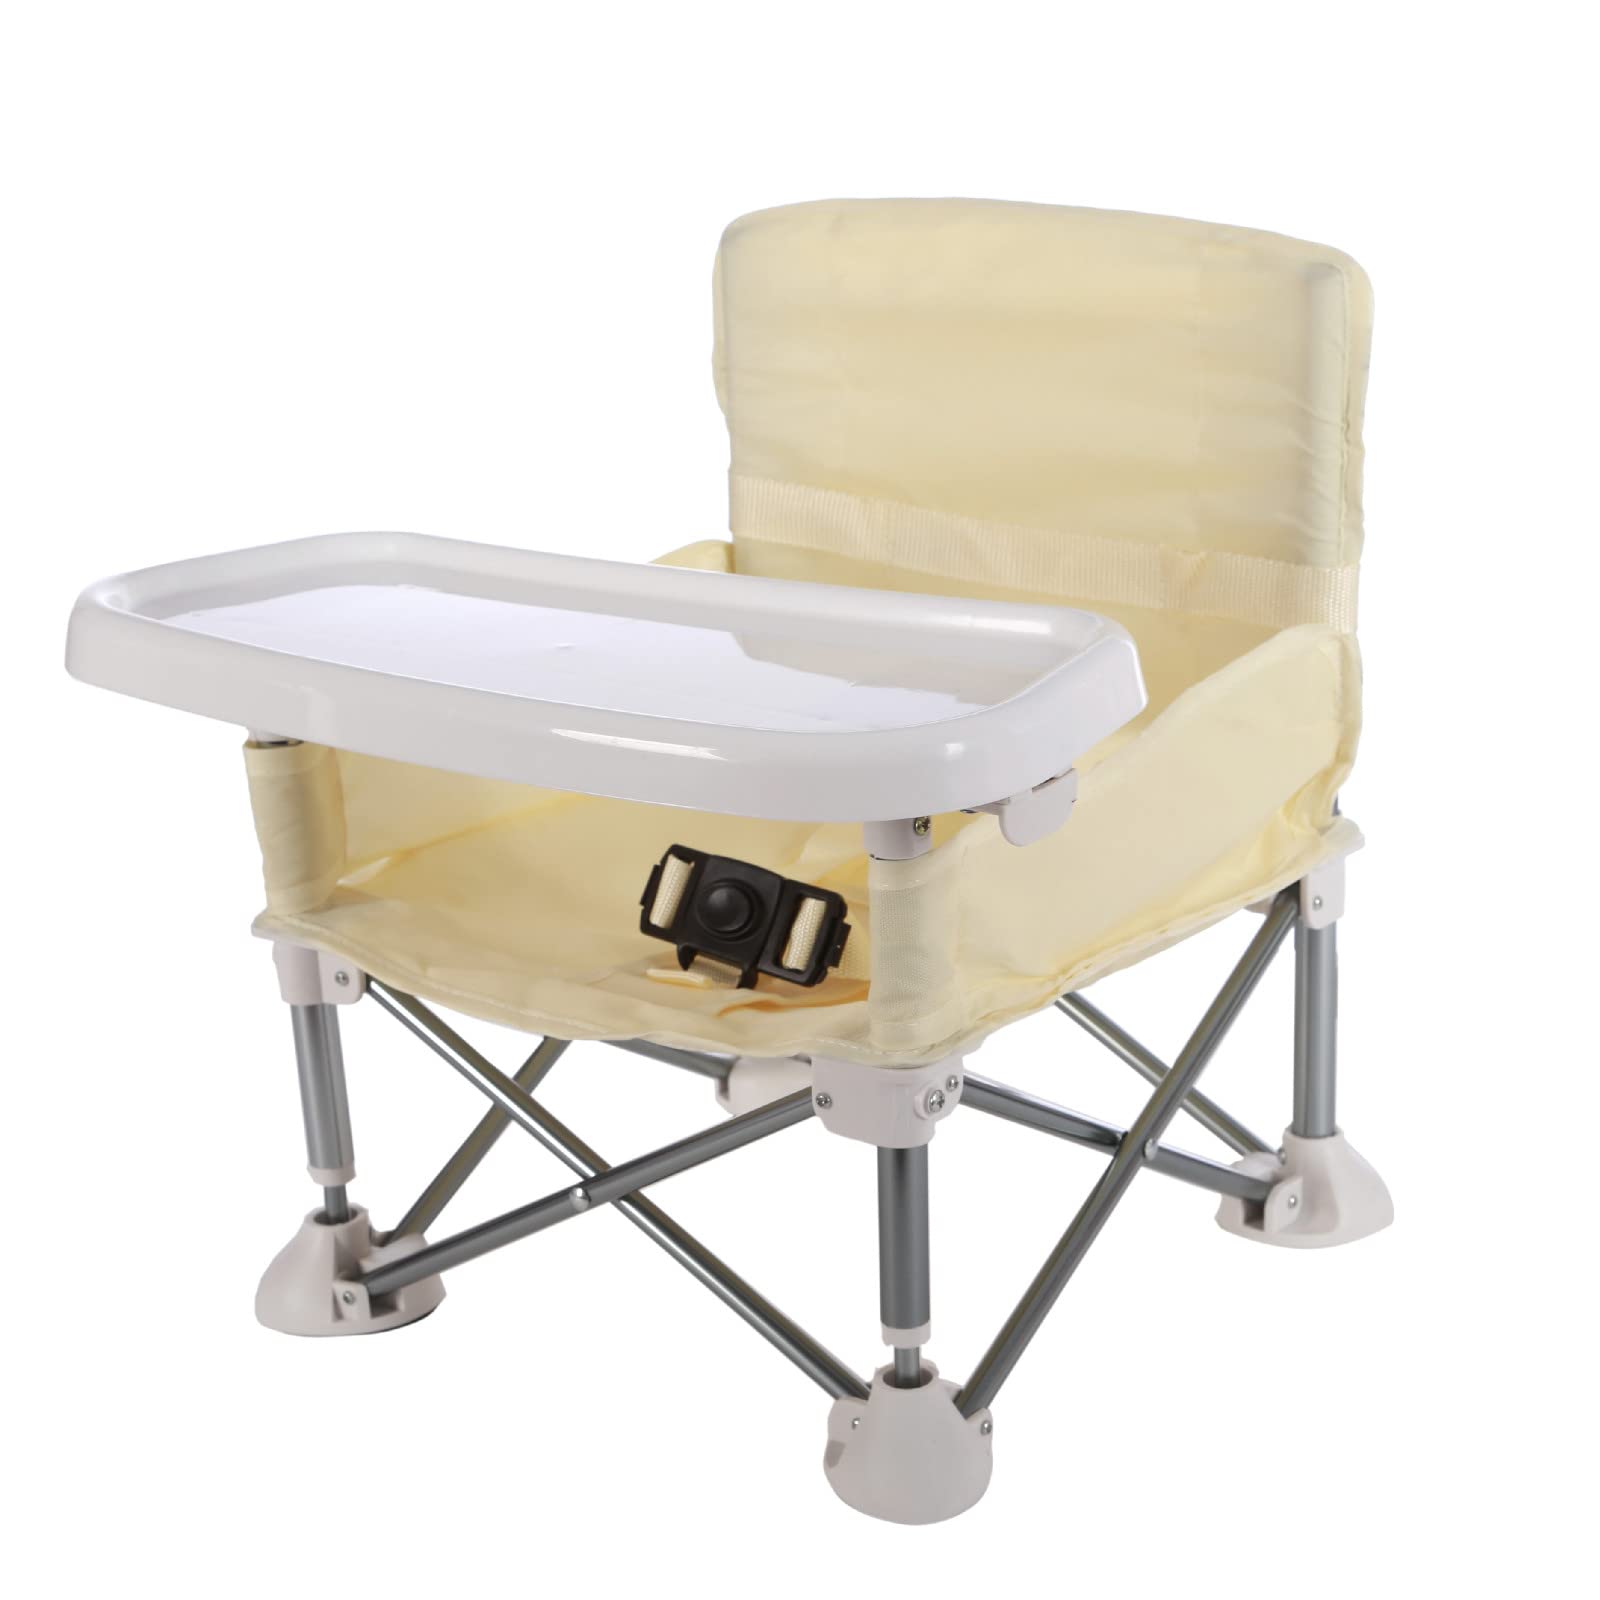 [HB.YE]ベビーチェア テーブルチェア 子供 お食事椅子 折り畳み携帯ベビーシート 赤ちゃんハイチェア ストラップのデザイン アルミダイニ